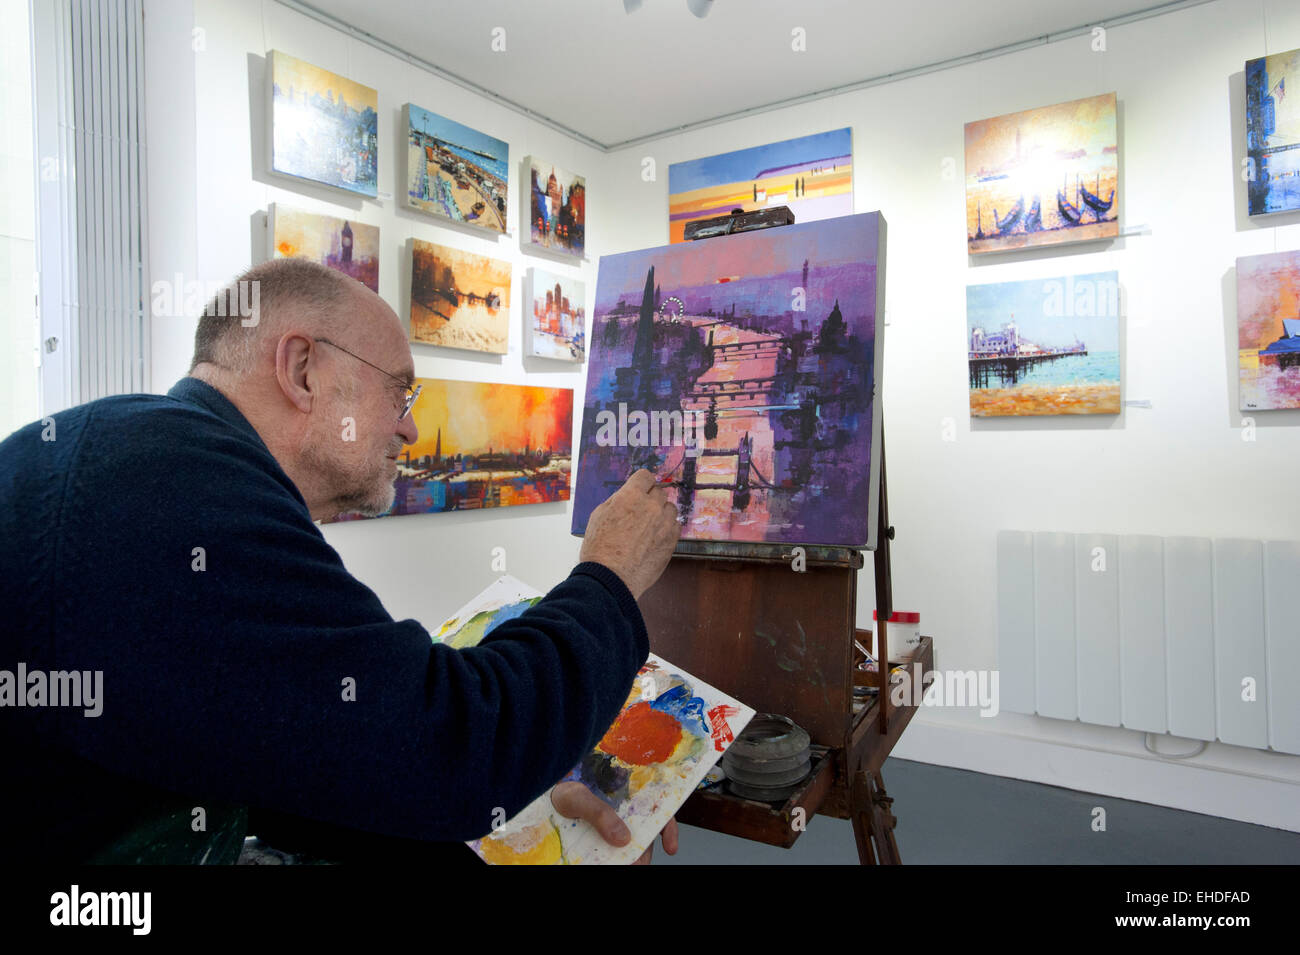 Bild von Roger Bamber: 21. Februar 2015: Brighton Künstler Colin Ruffell arbeitet an einer Acrylograph ein Gemälde von Tower Bridge und die Themse in London und andere Bilder auf dem Display während seiner ein-Mann show im 35 Nord, Galerie für zeitgenössische bildende Kunst in Brighton. Stockfoto